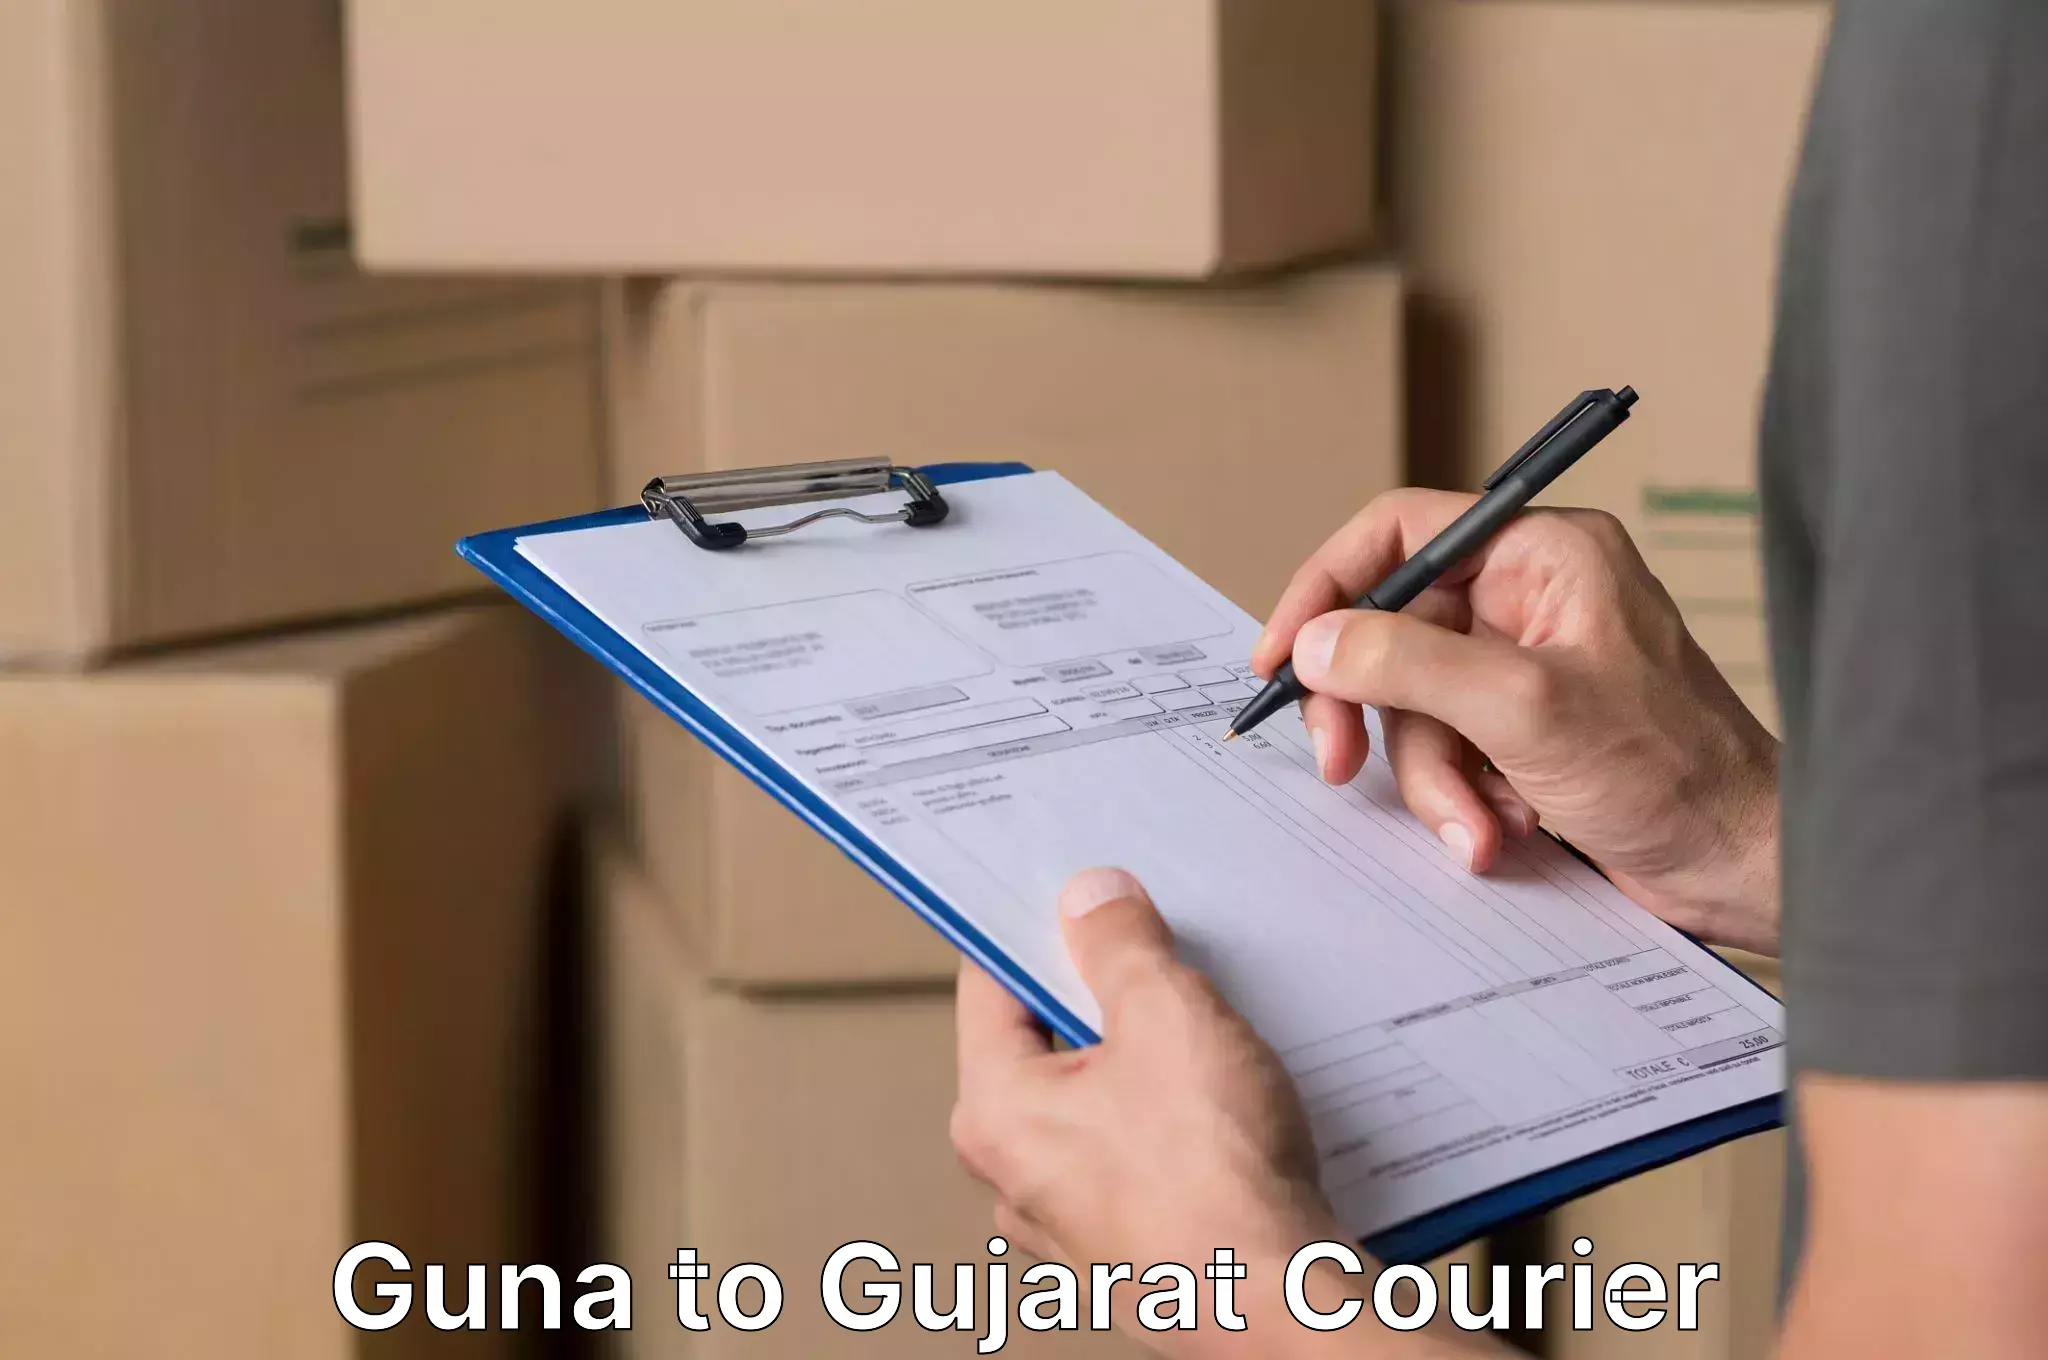 Furniture relocation experts Guna to Mundra